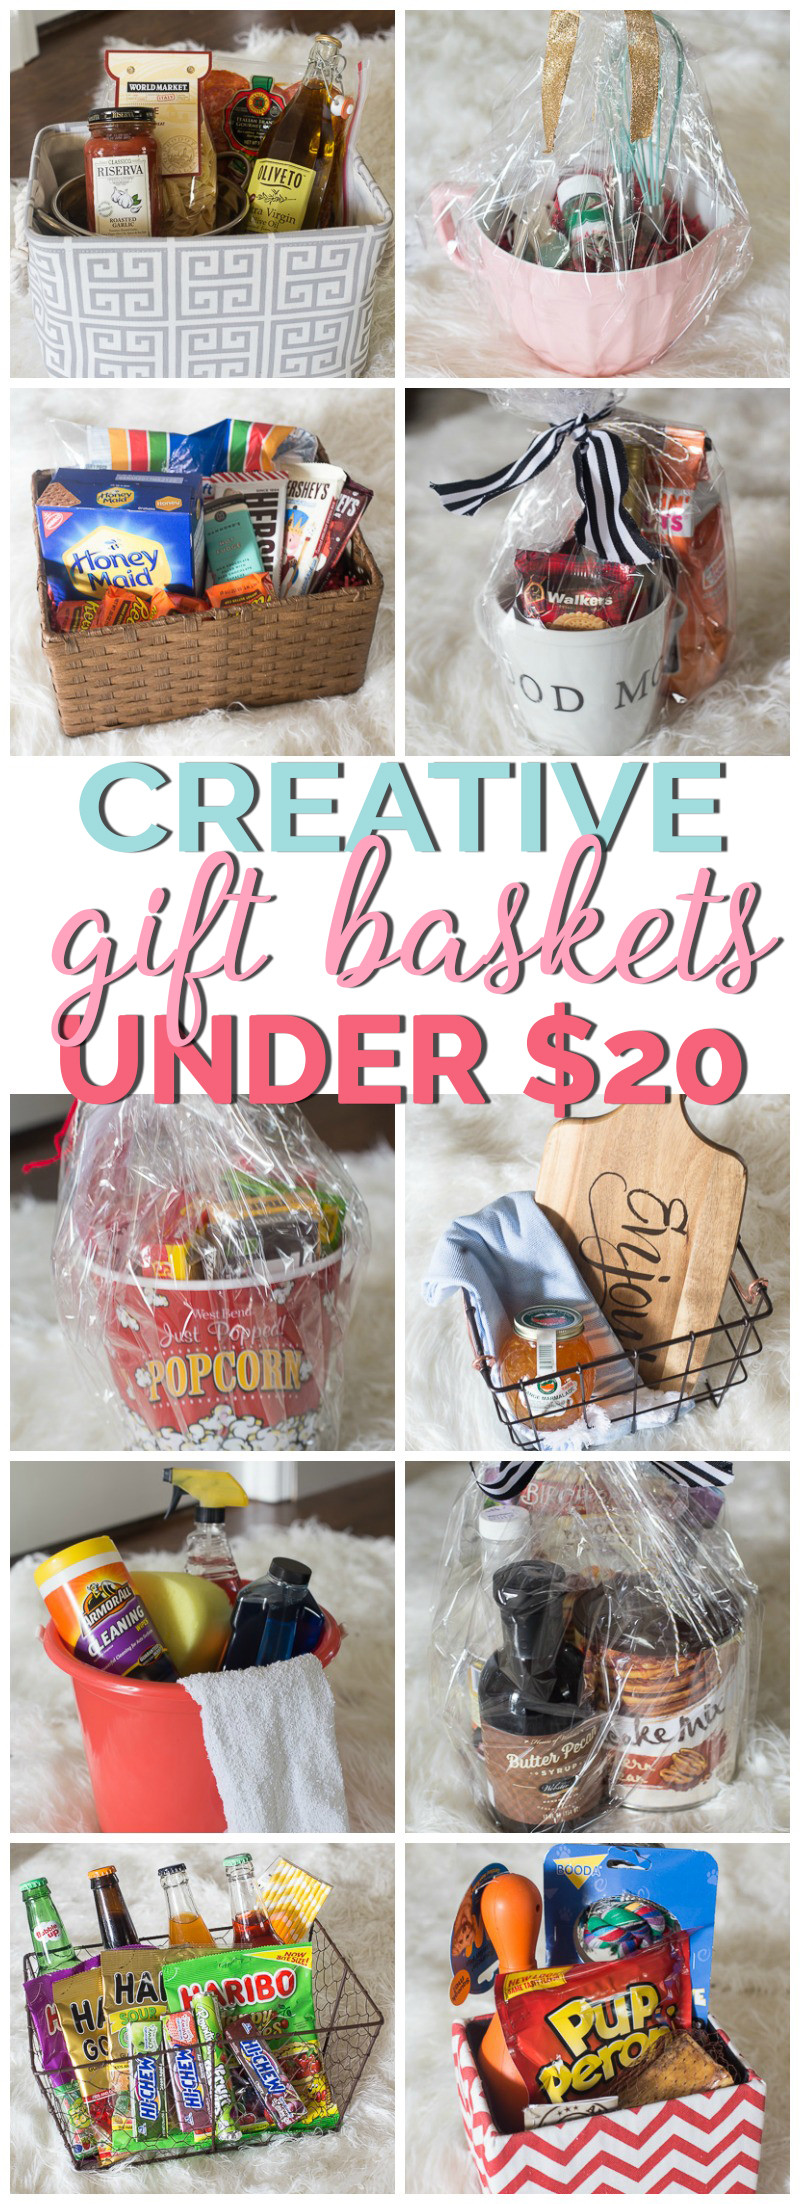 Work Gift Basket Ideas
 Creative Gift Basket Ideas Under $20